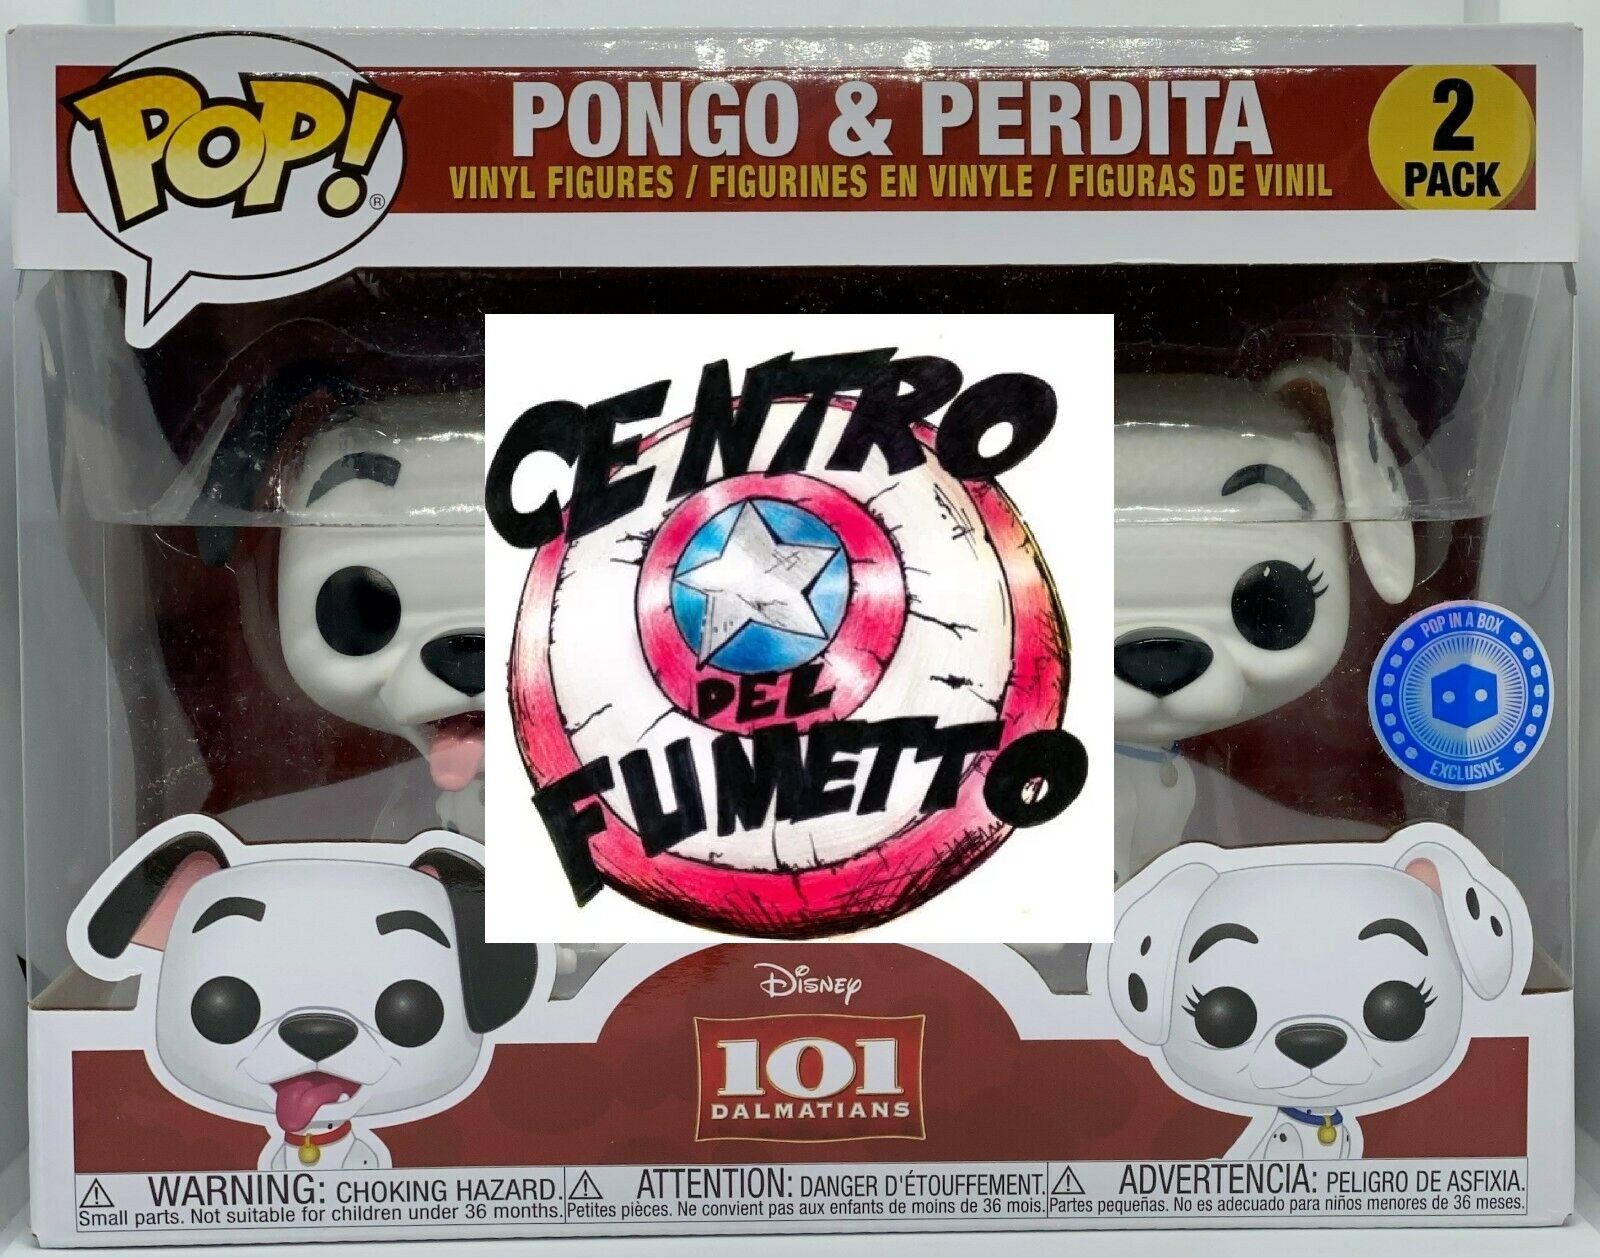 セール FUNKO POP! 101 ポンゴ& パーディタ 2パック限定 | www